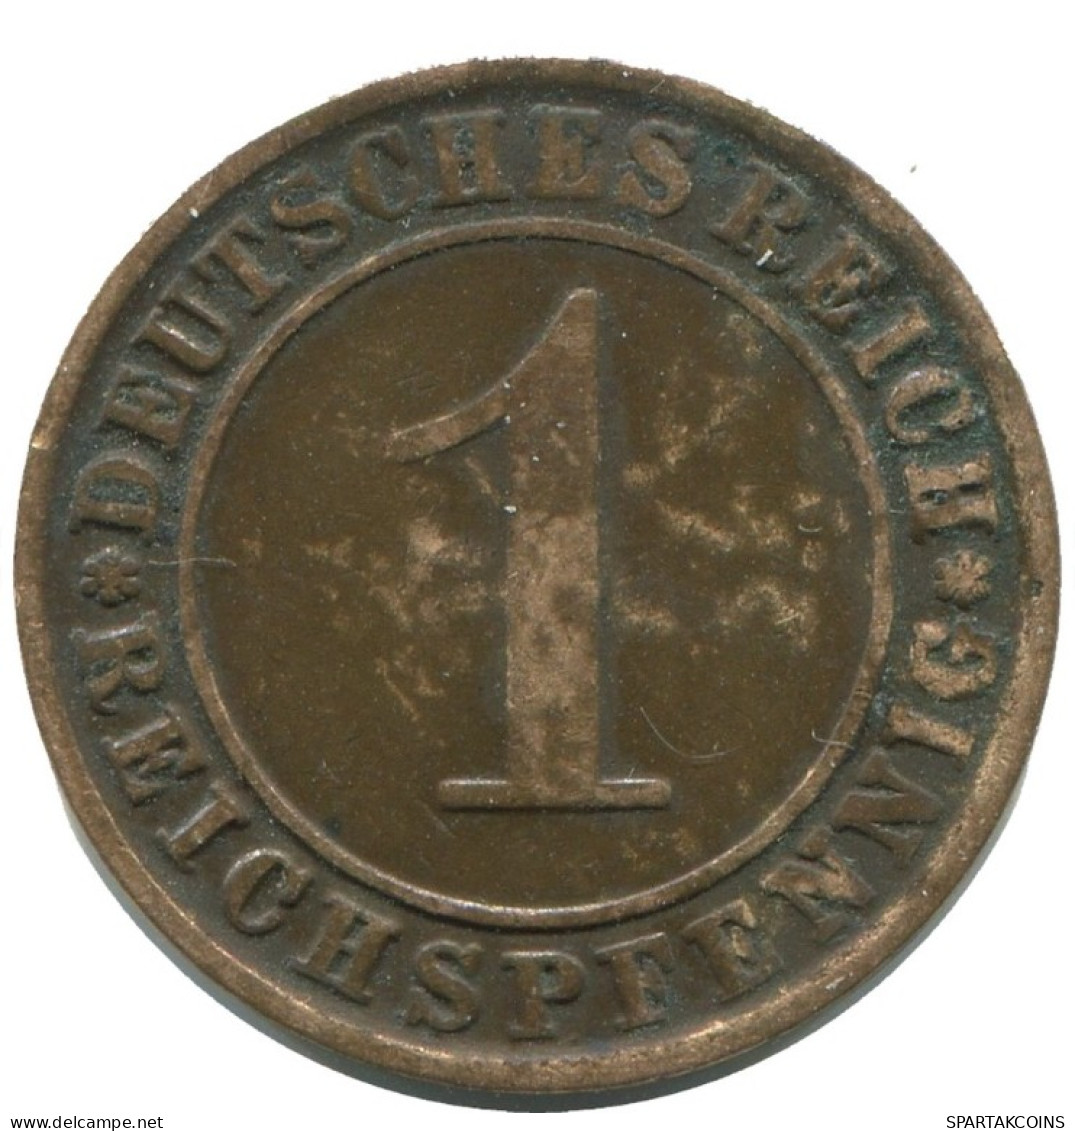 1 REICHSPFENNIG 1924 J ALEMANIA Moneda GERMANY #AD461.9.E.A - 1 Rentenpfennig & 1 Reichspfennig